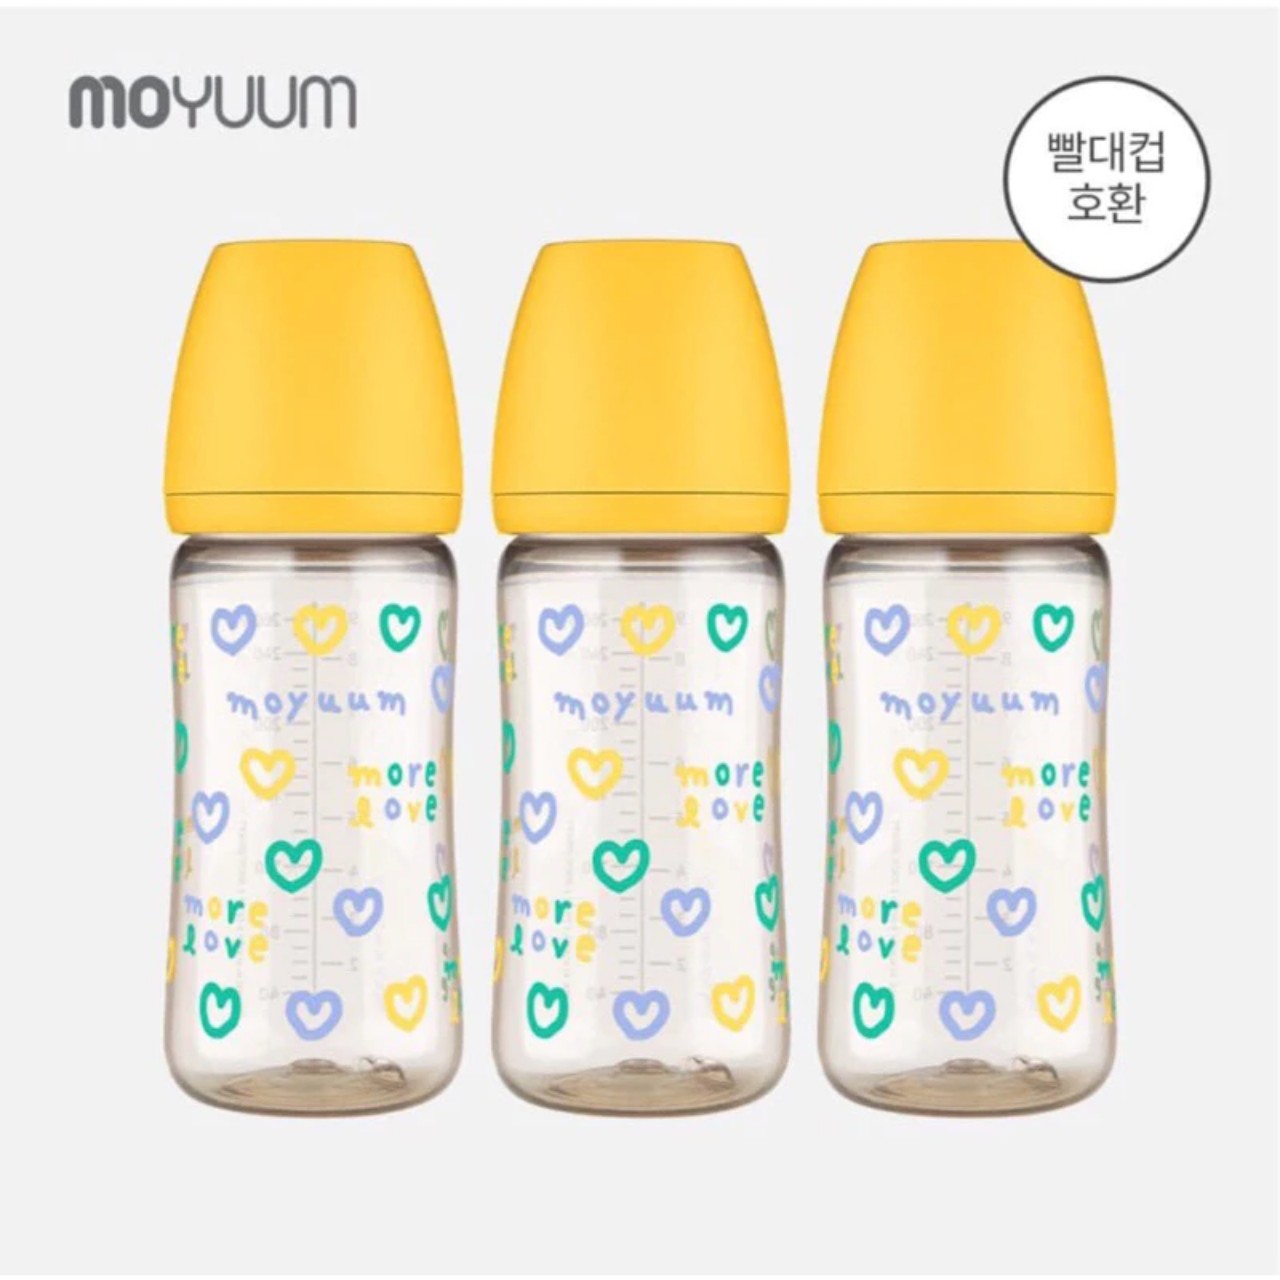 Bình sữa Moyuum Hàn Quốc 270ml Tim Vàng (More Love Edition)